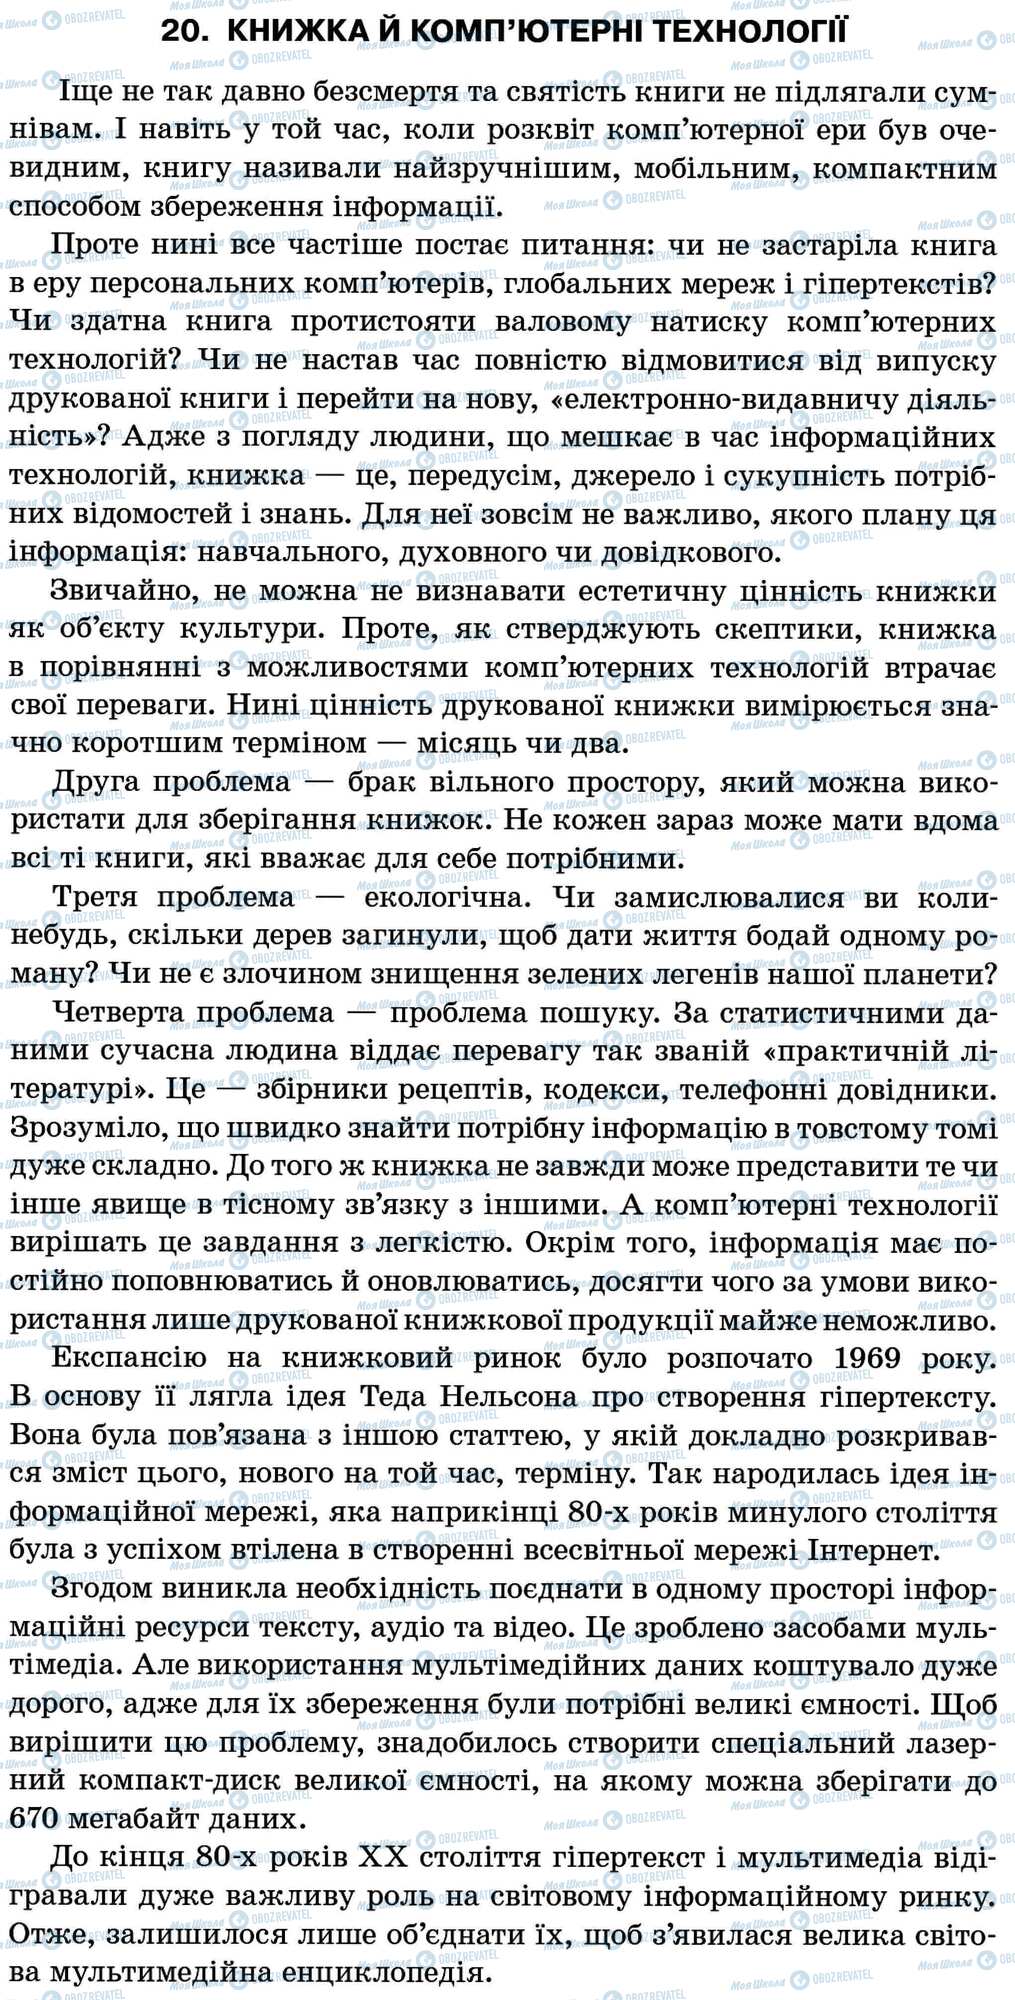 ДПА Укр мова 11 класс страница 20. Книжка й комп’ютерні технології